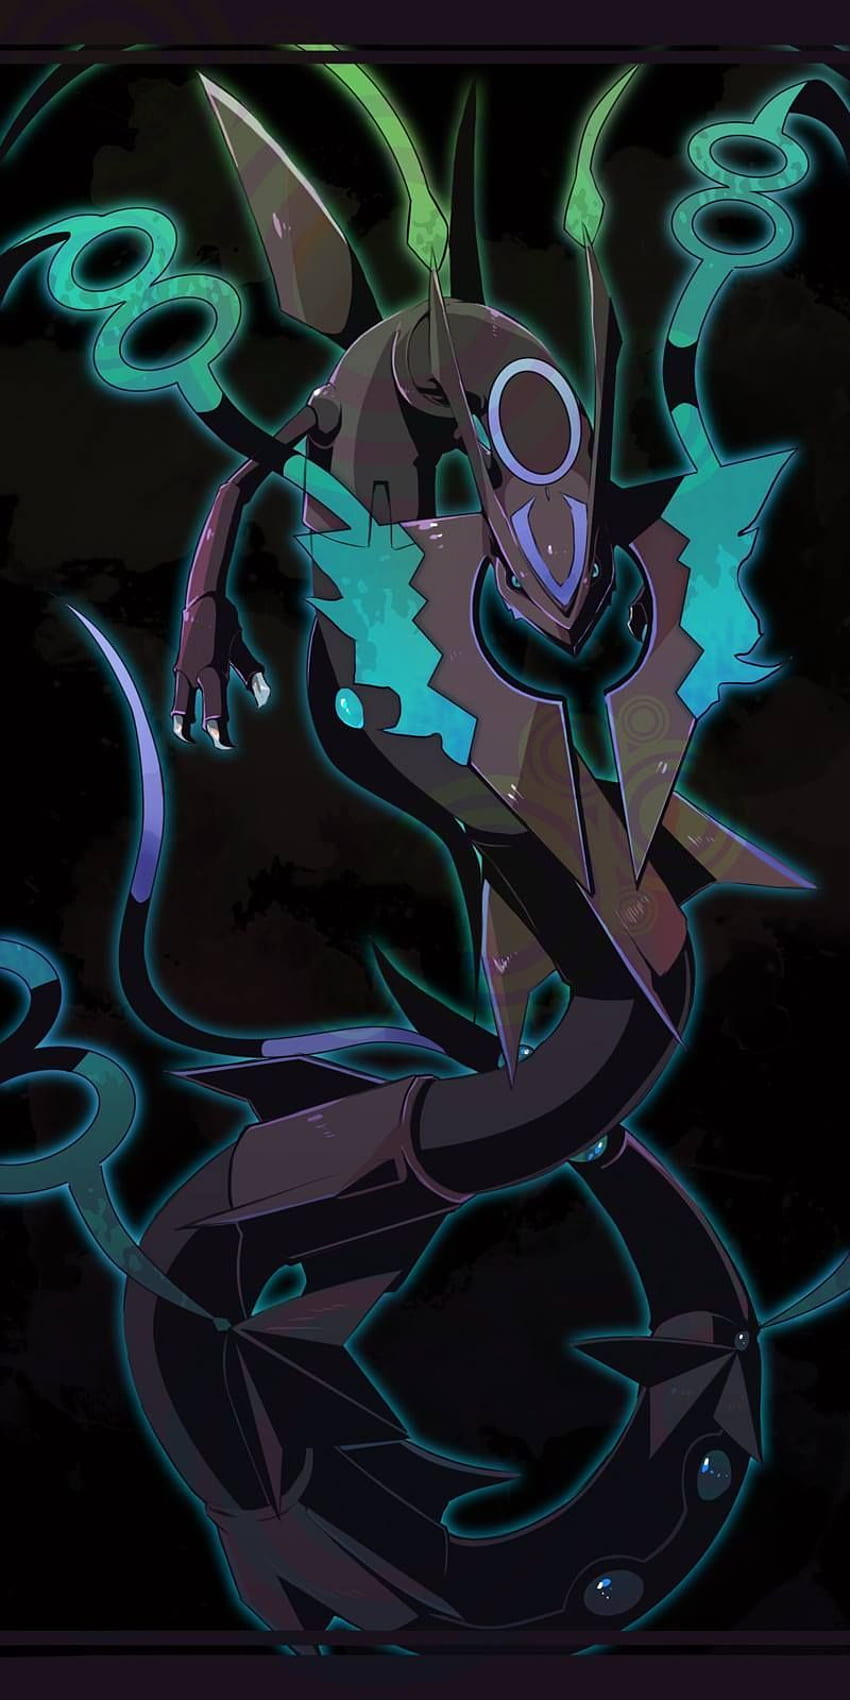 Mega Arceus là một trong những siêu phẩm của thế giới Pokemon mà bạn không thể bỏ lỡ. Với khả năng vượt trội và sức mạnh phi thường, Mega Arceus sẽ trở thành thần thú của bạn trong cuộc chiến để bảo vệ thế giới. Hãy cùng khám phá những hình ảnh và thông tin chi tiết về siêu Pokemon này bằng những bức tranh tuyệt đẹp, chắc chắn sẽ khiến bạn say đắm!